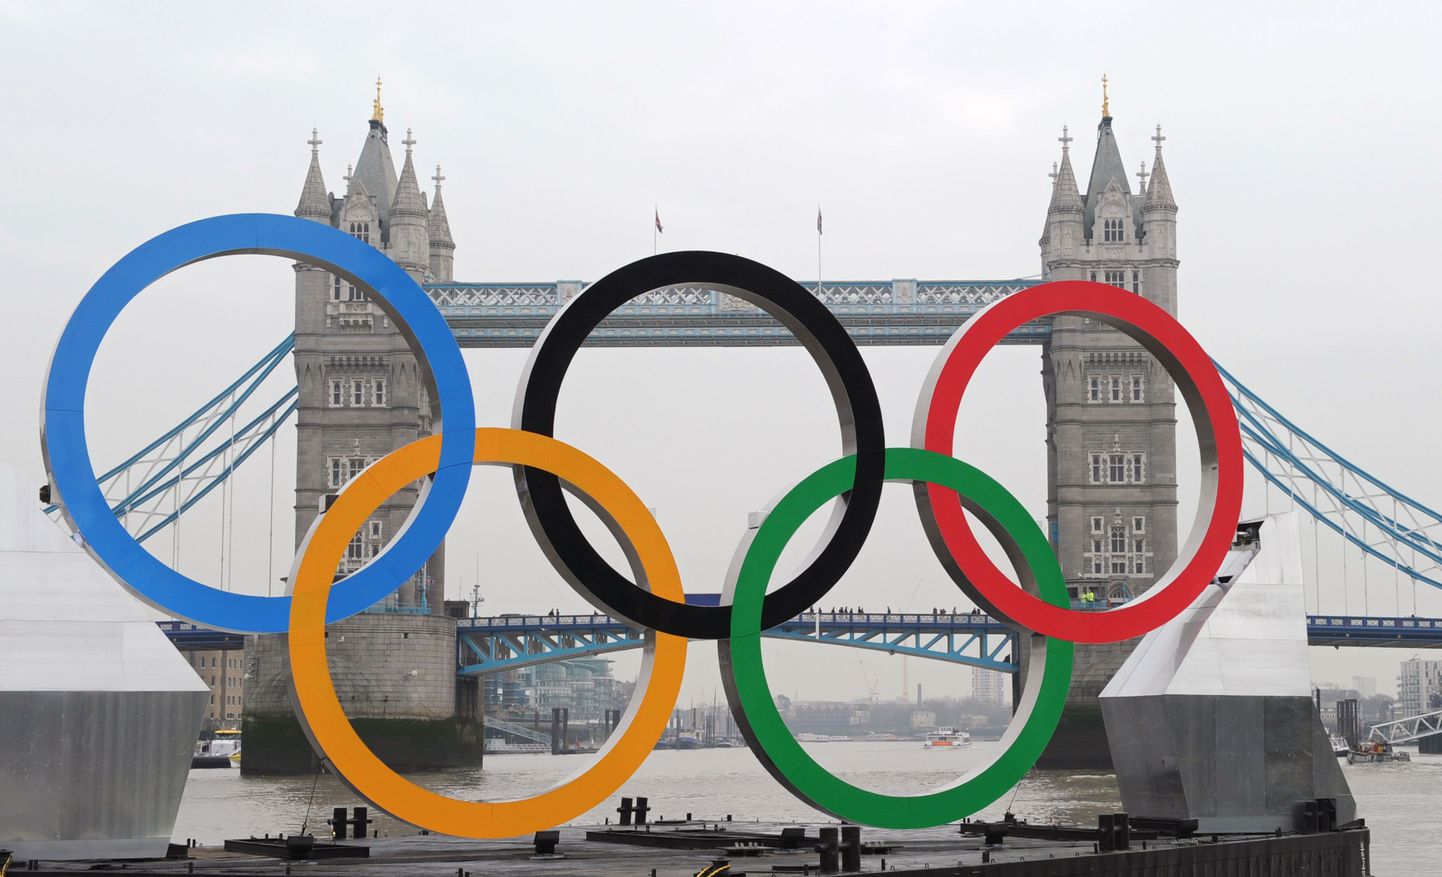 Olümpiarõngad Thamesi jõel.